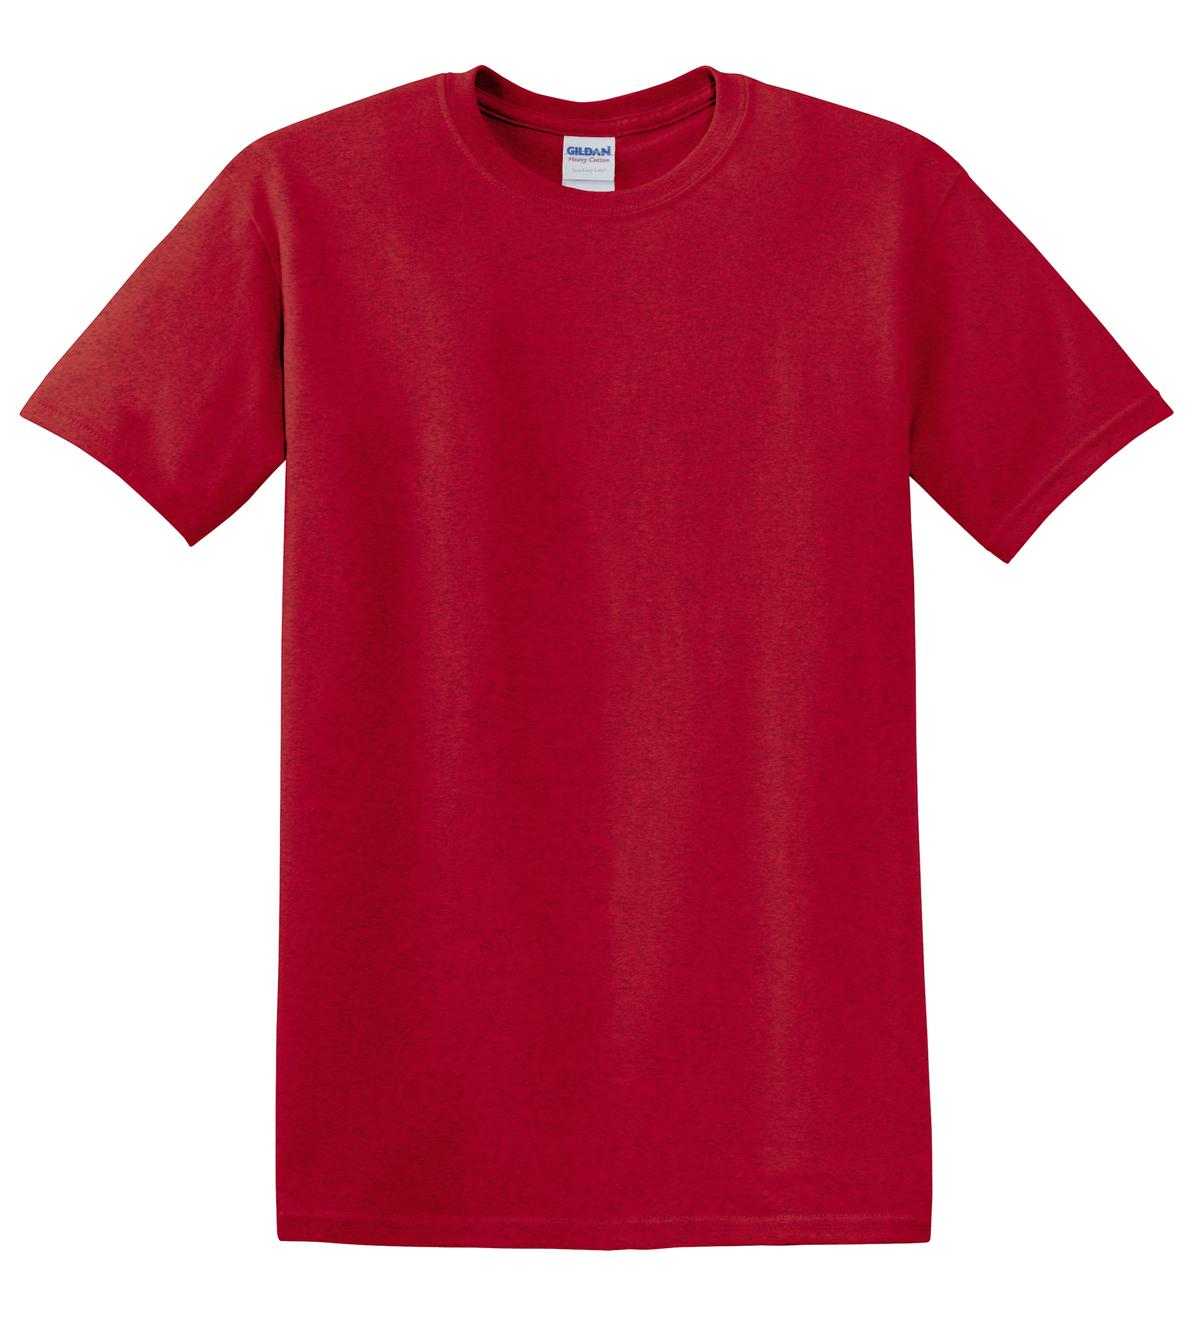 Gildan 5000 Heavy Cotton 100% Cotton T-Shirt - Antique Cherry Red - HIT a Double